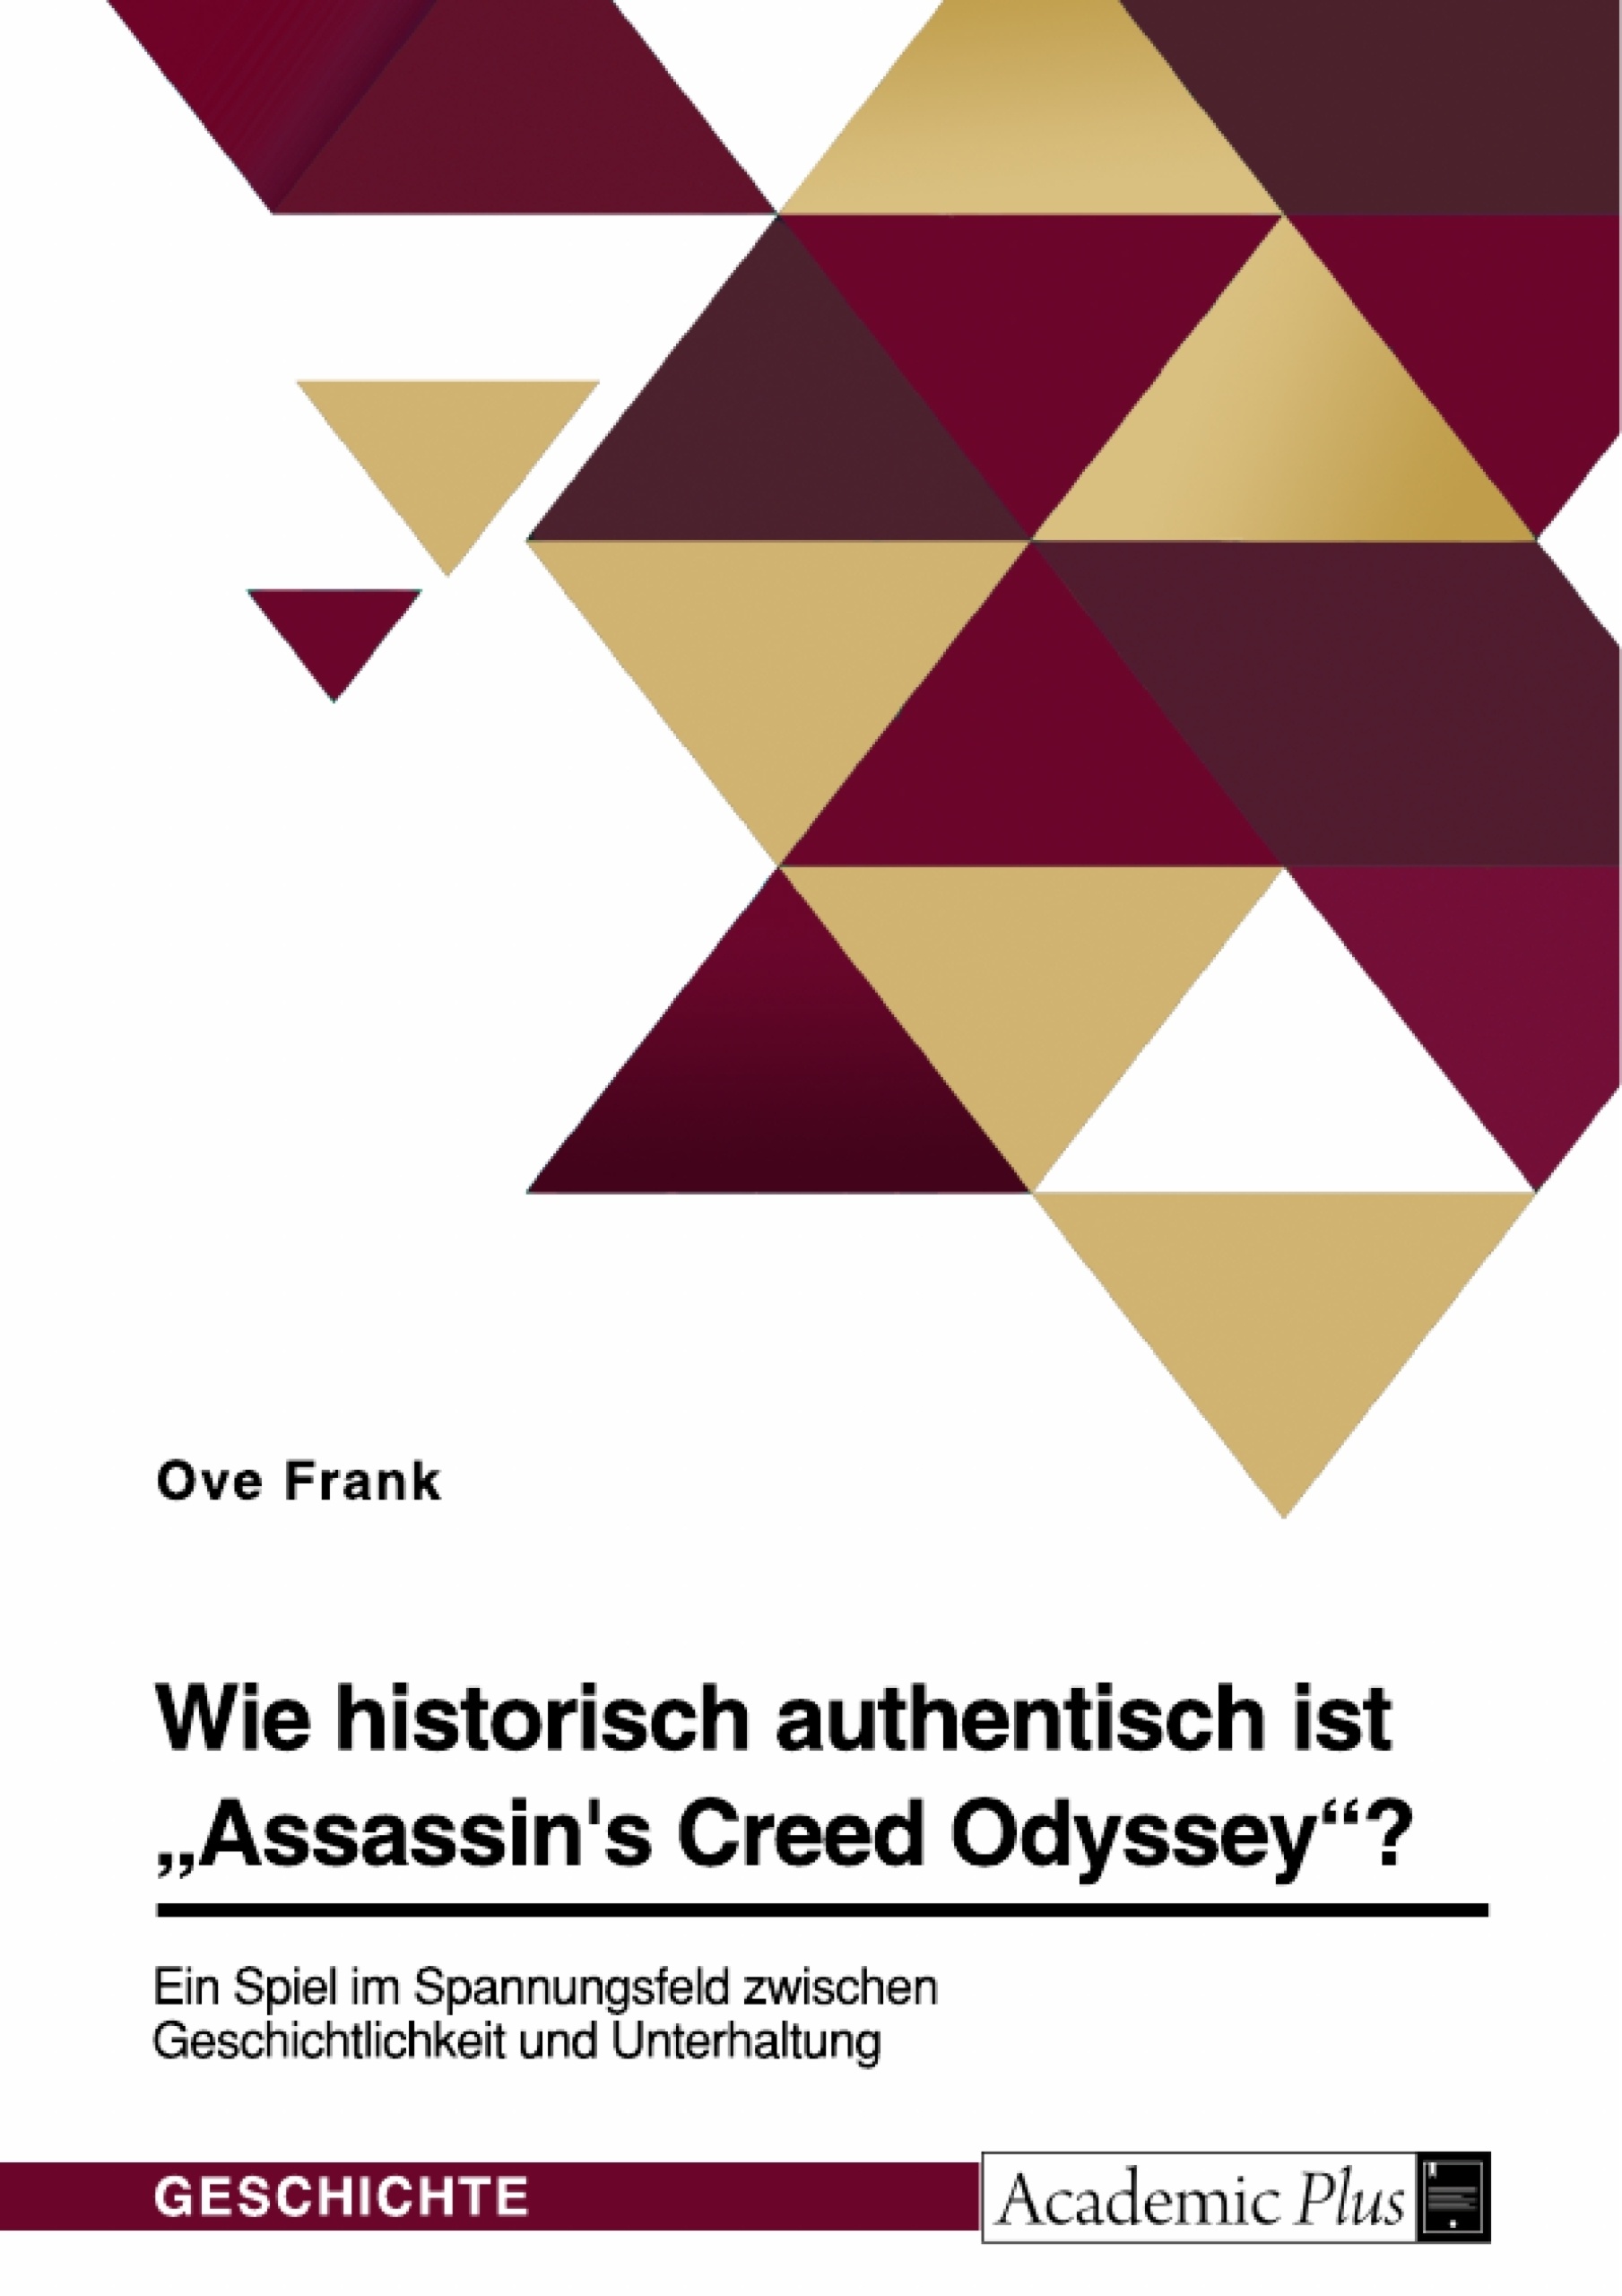 Título: Wie historisch authentisch ist "Assassin's Creed Odyssey"? Ein Spiel im Spannungsfeld zwischen Geschichtlichkeit und Unterhaltung